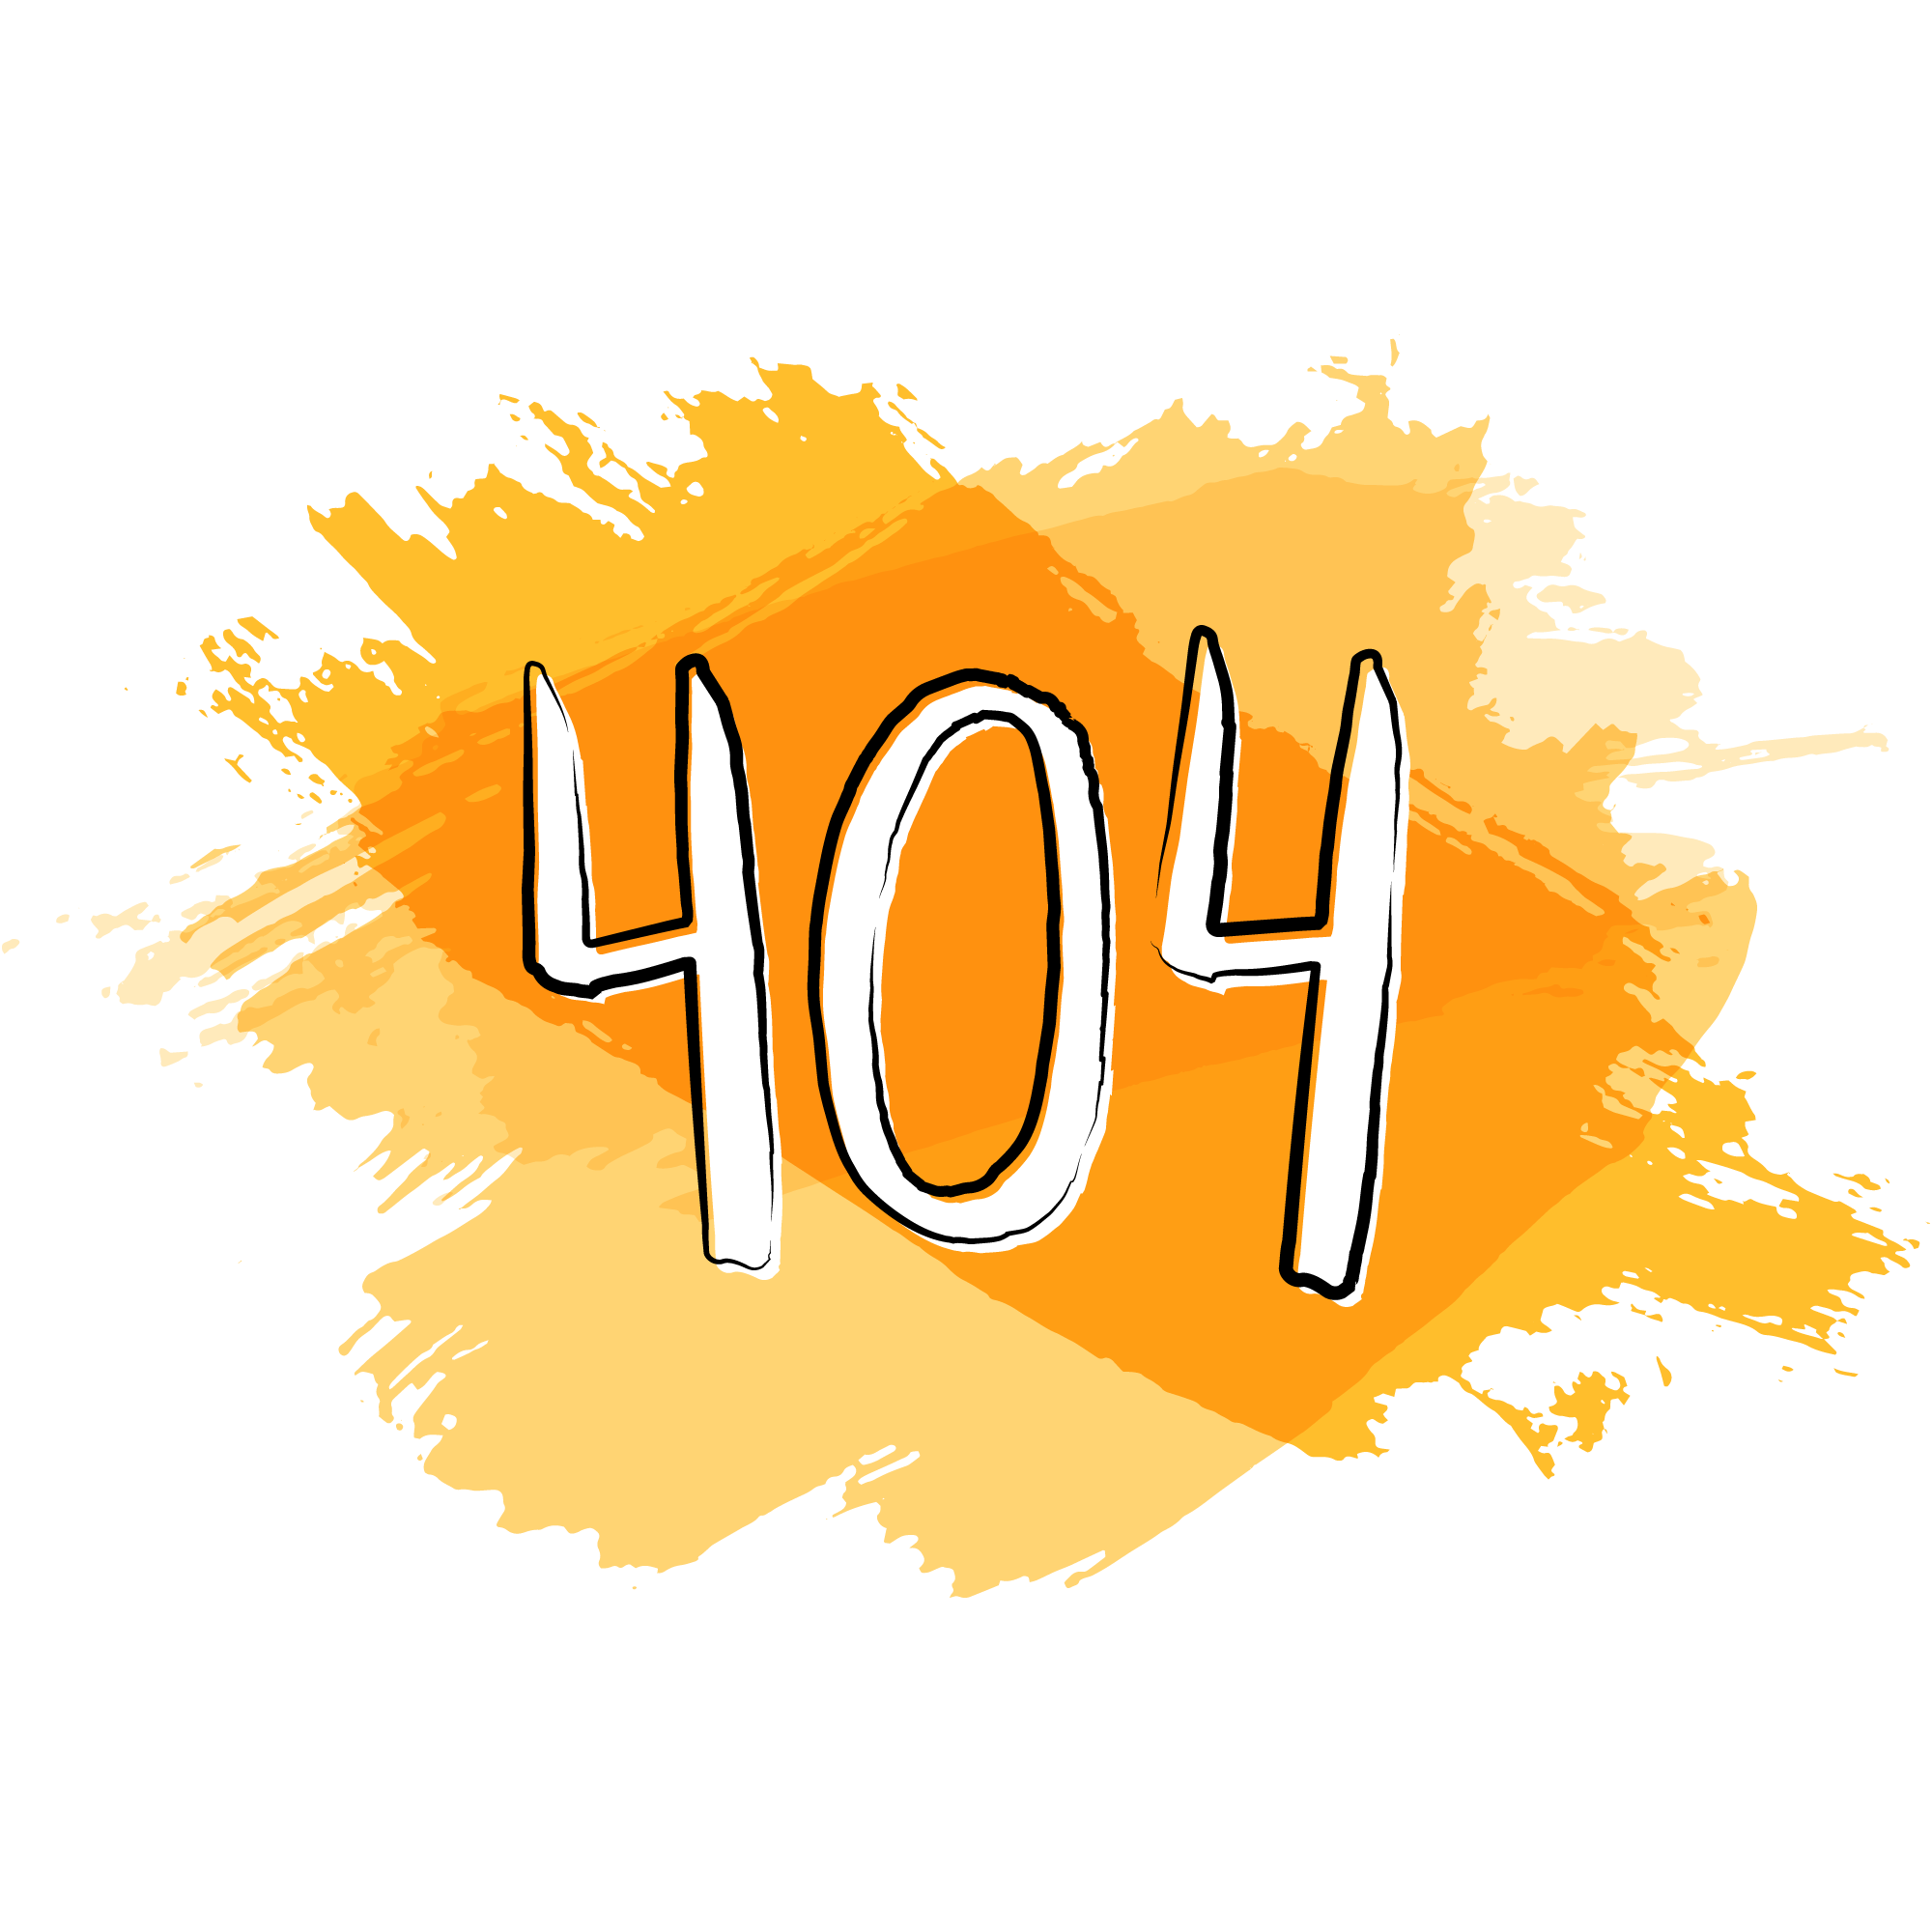 Der Text "404" steht in weißen Buchstaben und schwarzer Kontur auf orangen Pinselstrichen im Hintergrund.